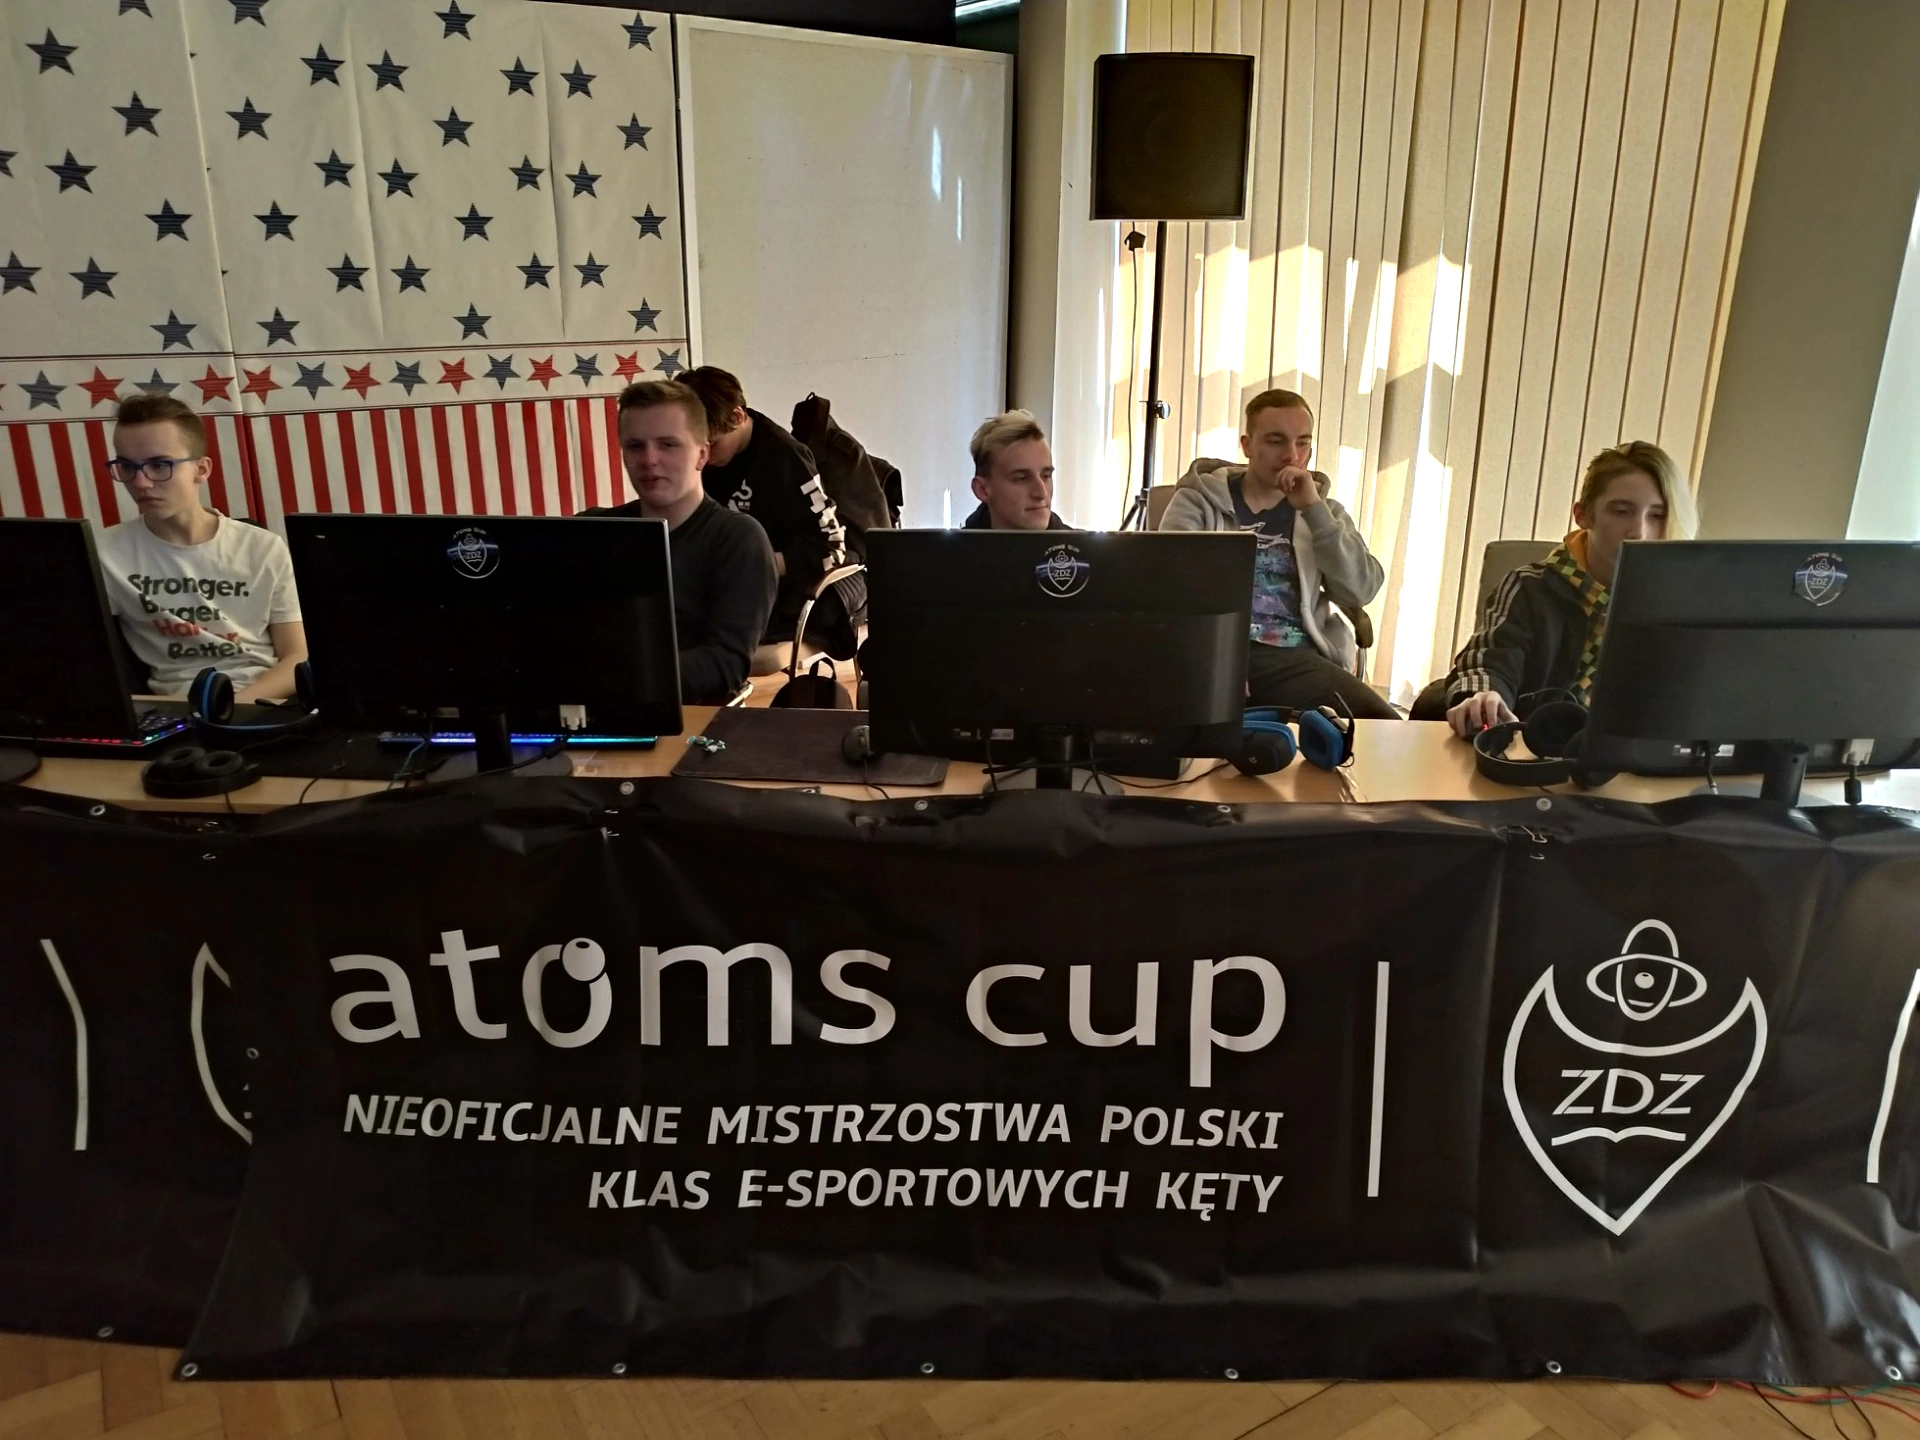 Nieoficjalne Mistrzostwa Polski klas e-sportowych w Kętach